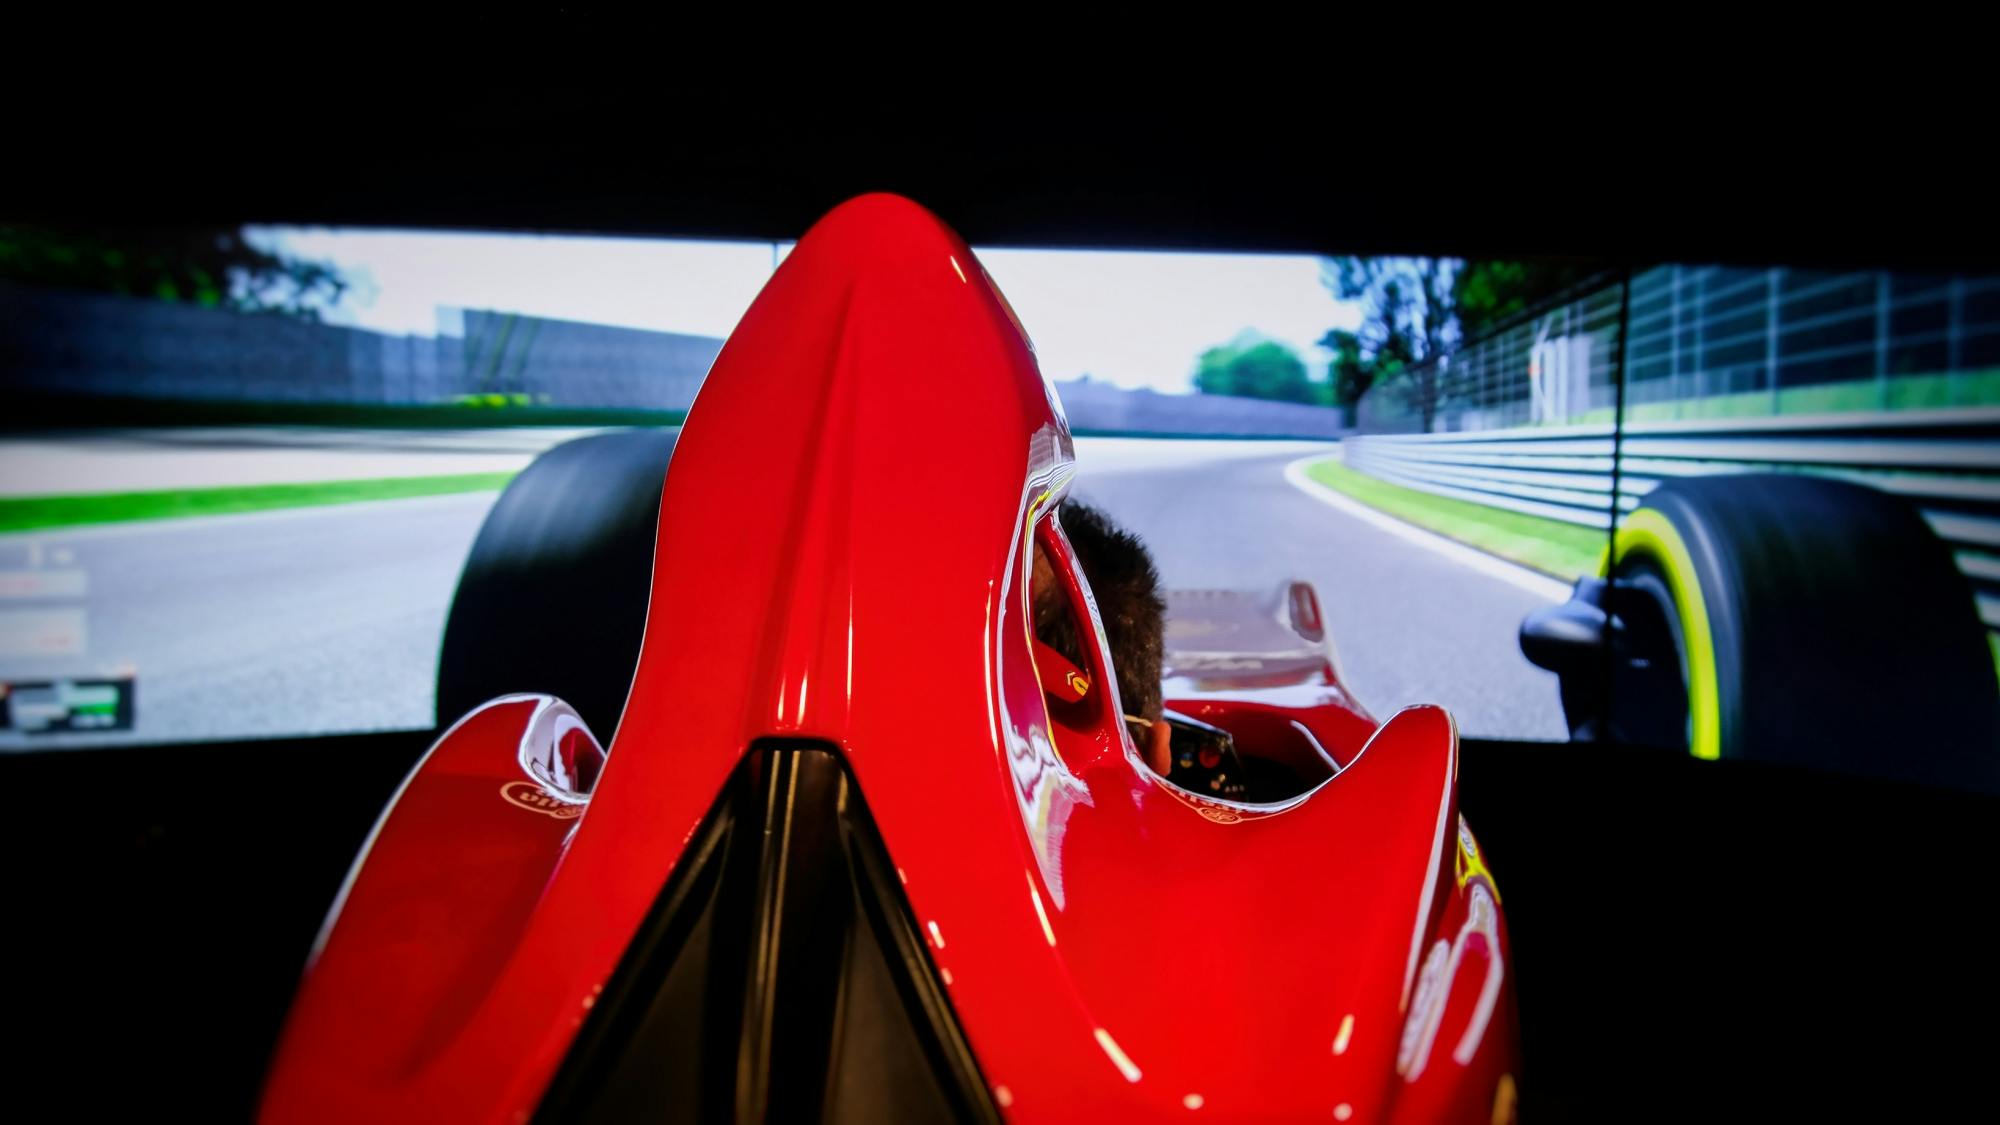 Billet d'entrée au musée Ferrari de Maranello et simulateur